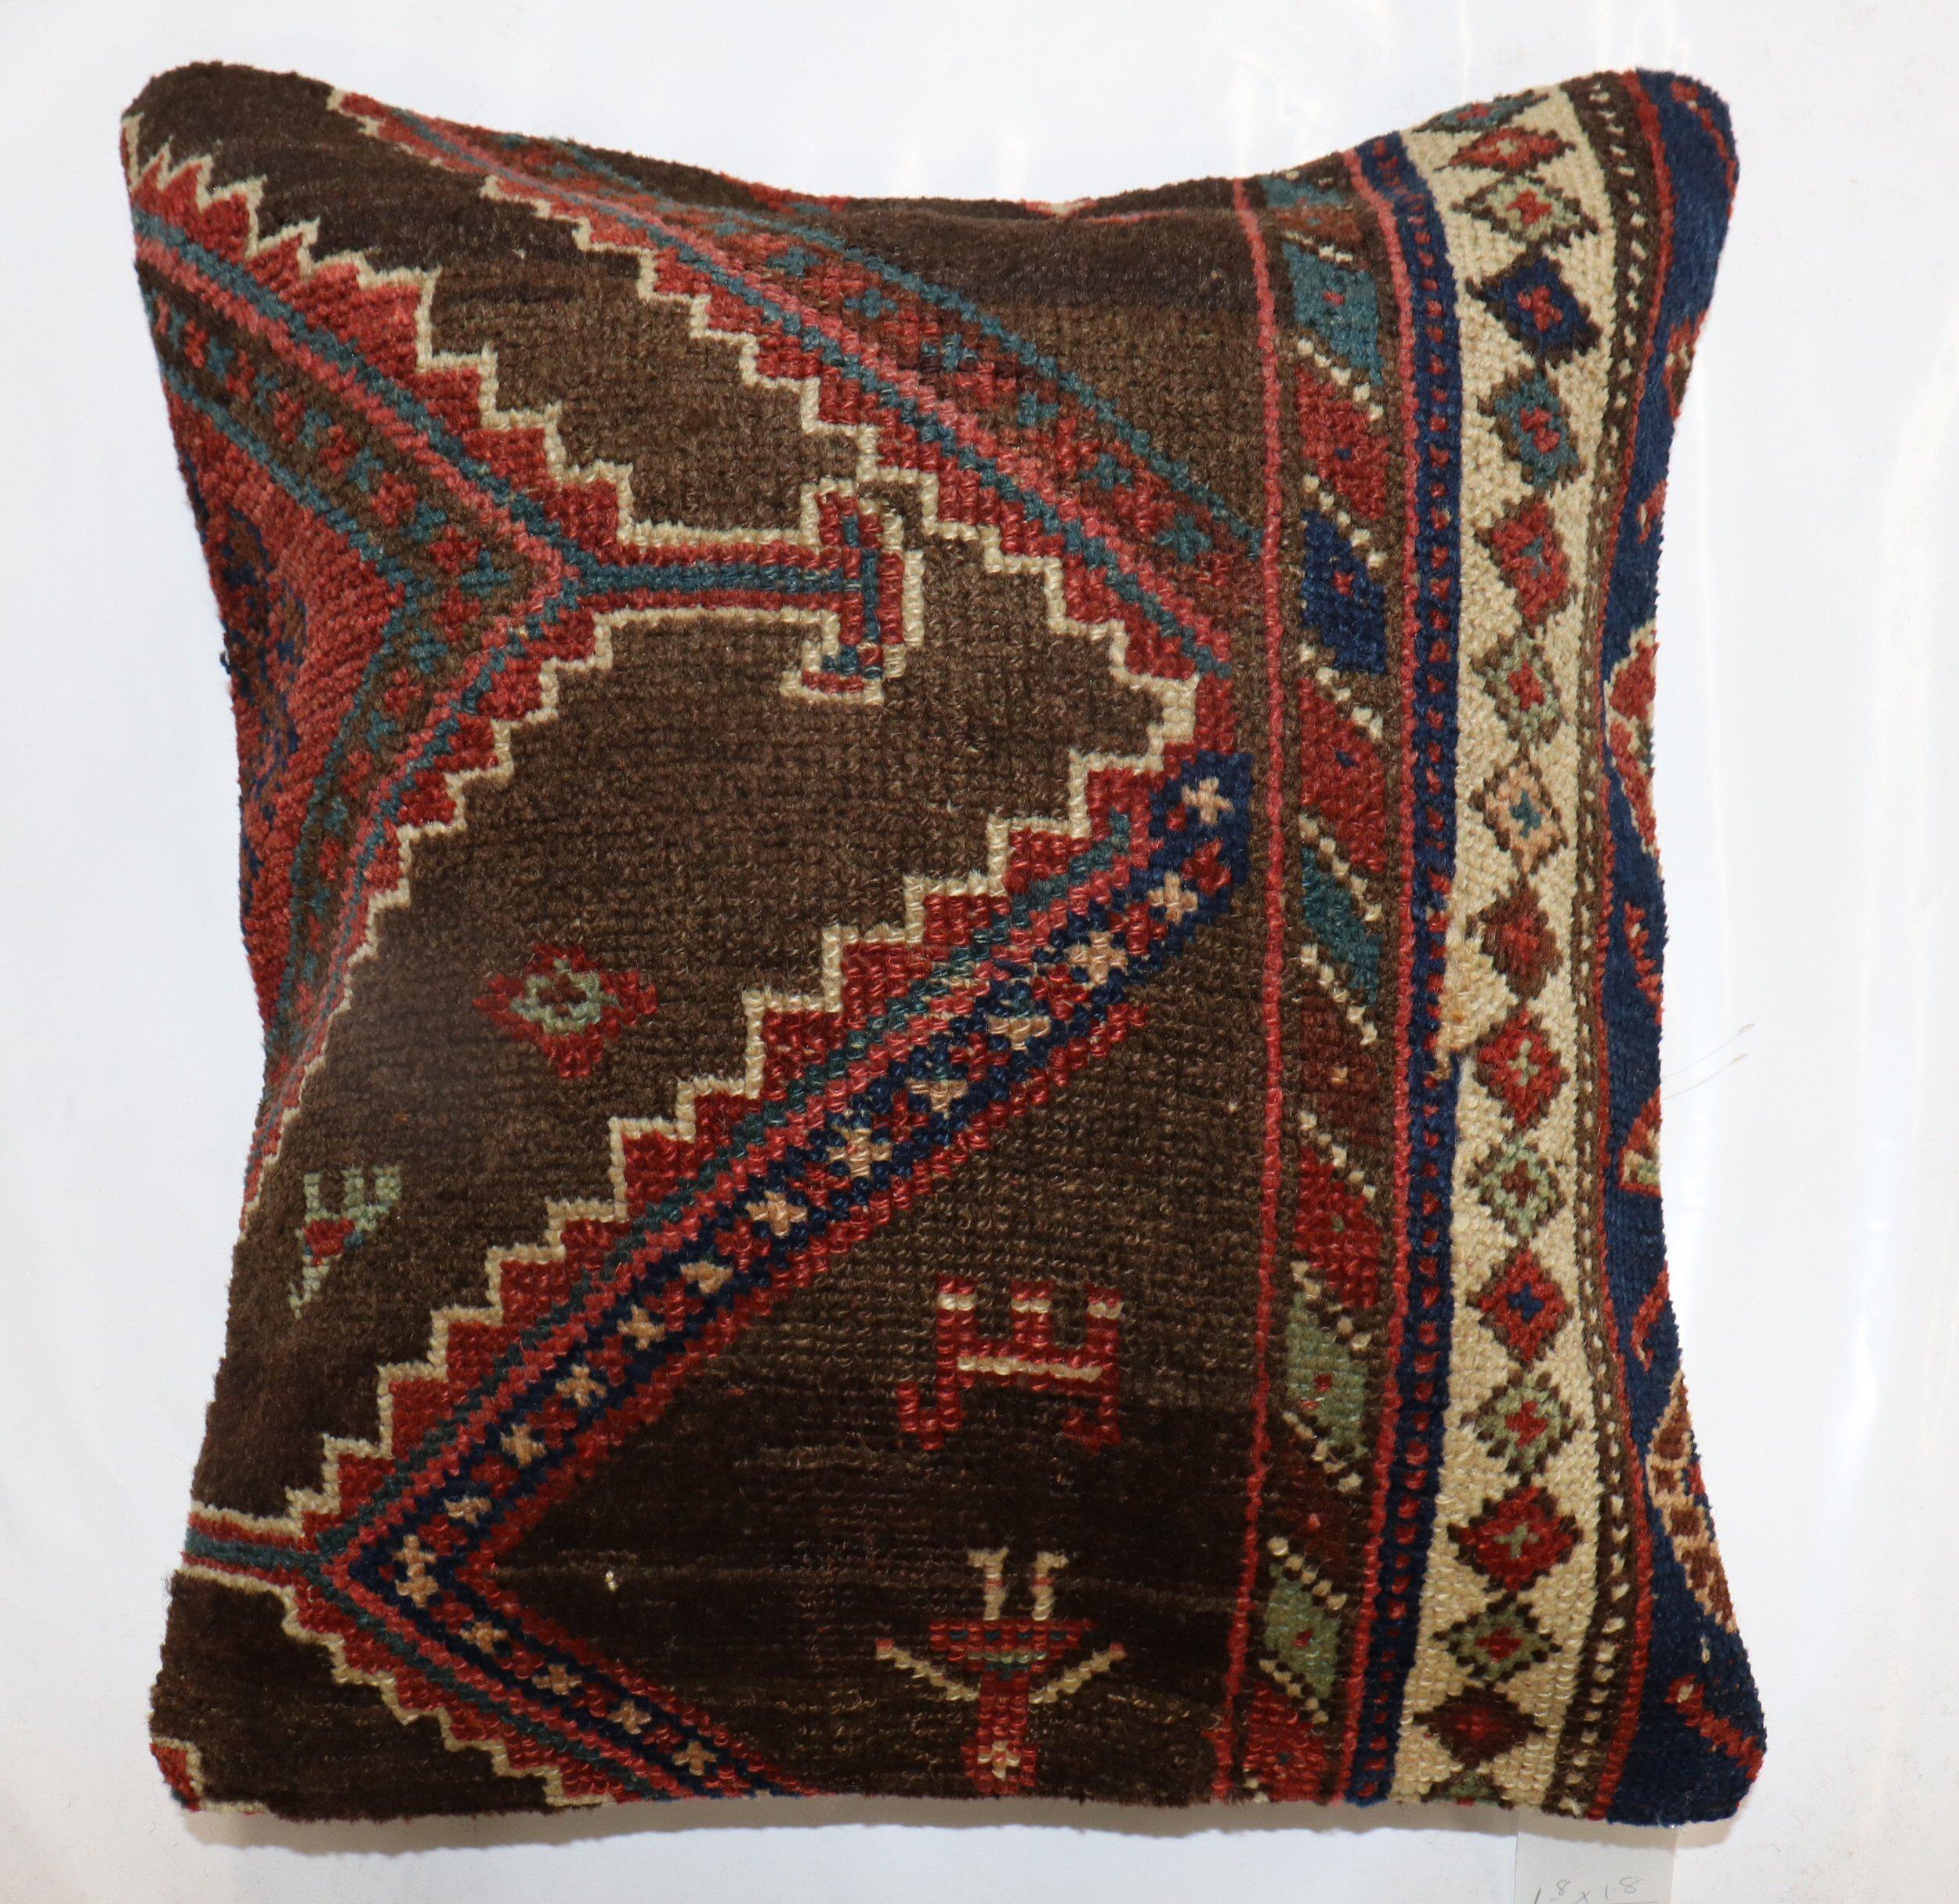 Oreiller fabriqué à partir d'un ancien tapis persan Kurd du début du 20e siècle. Fermeture à glissière et poly-fill fourni.

Mesures : 20'' x 20''